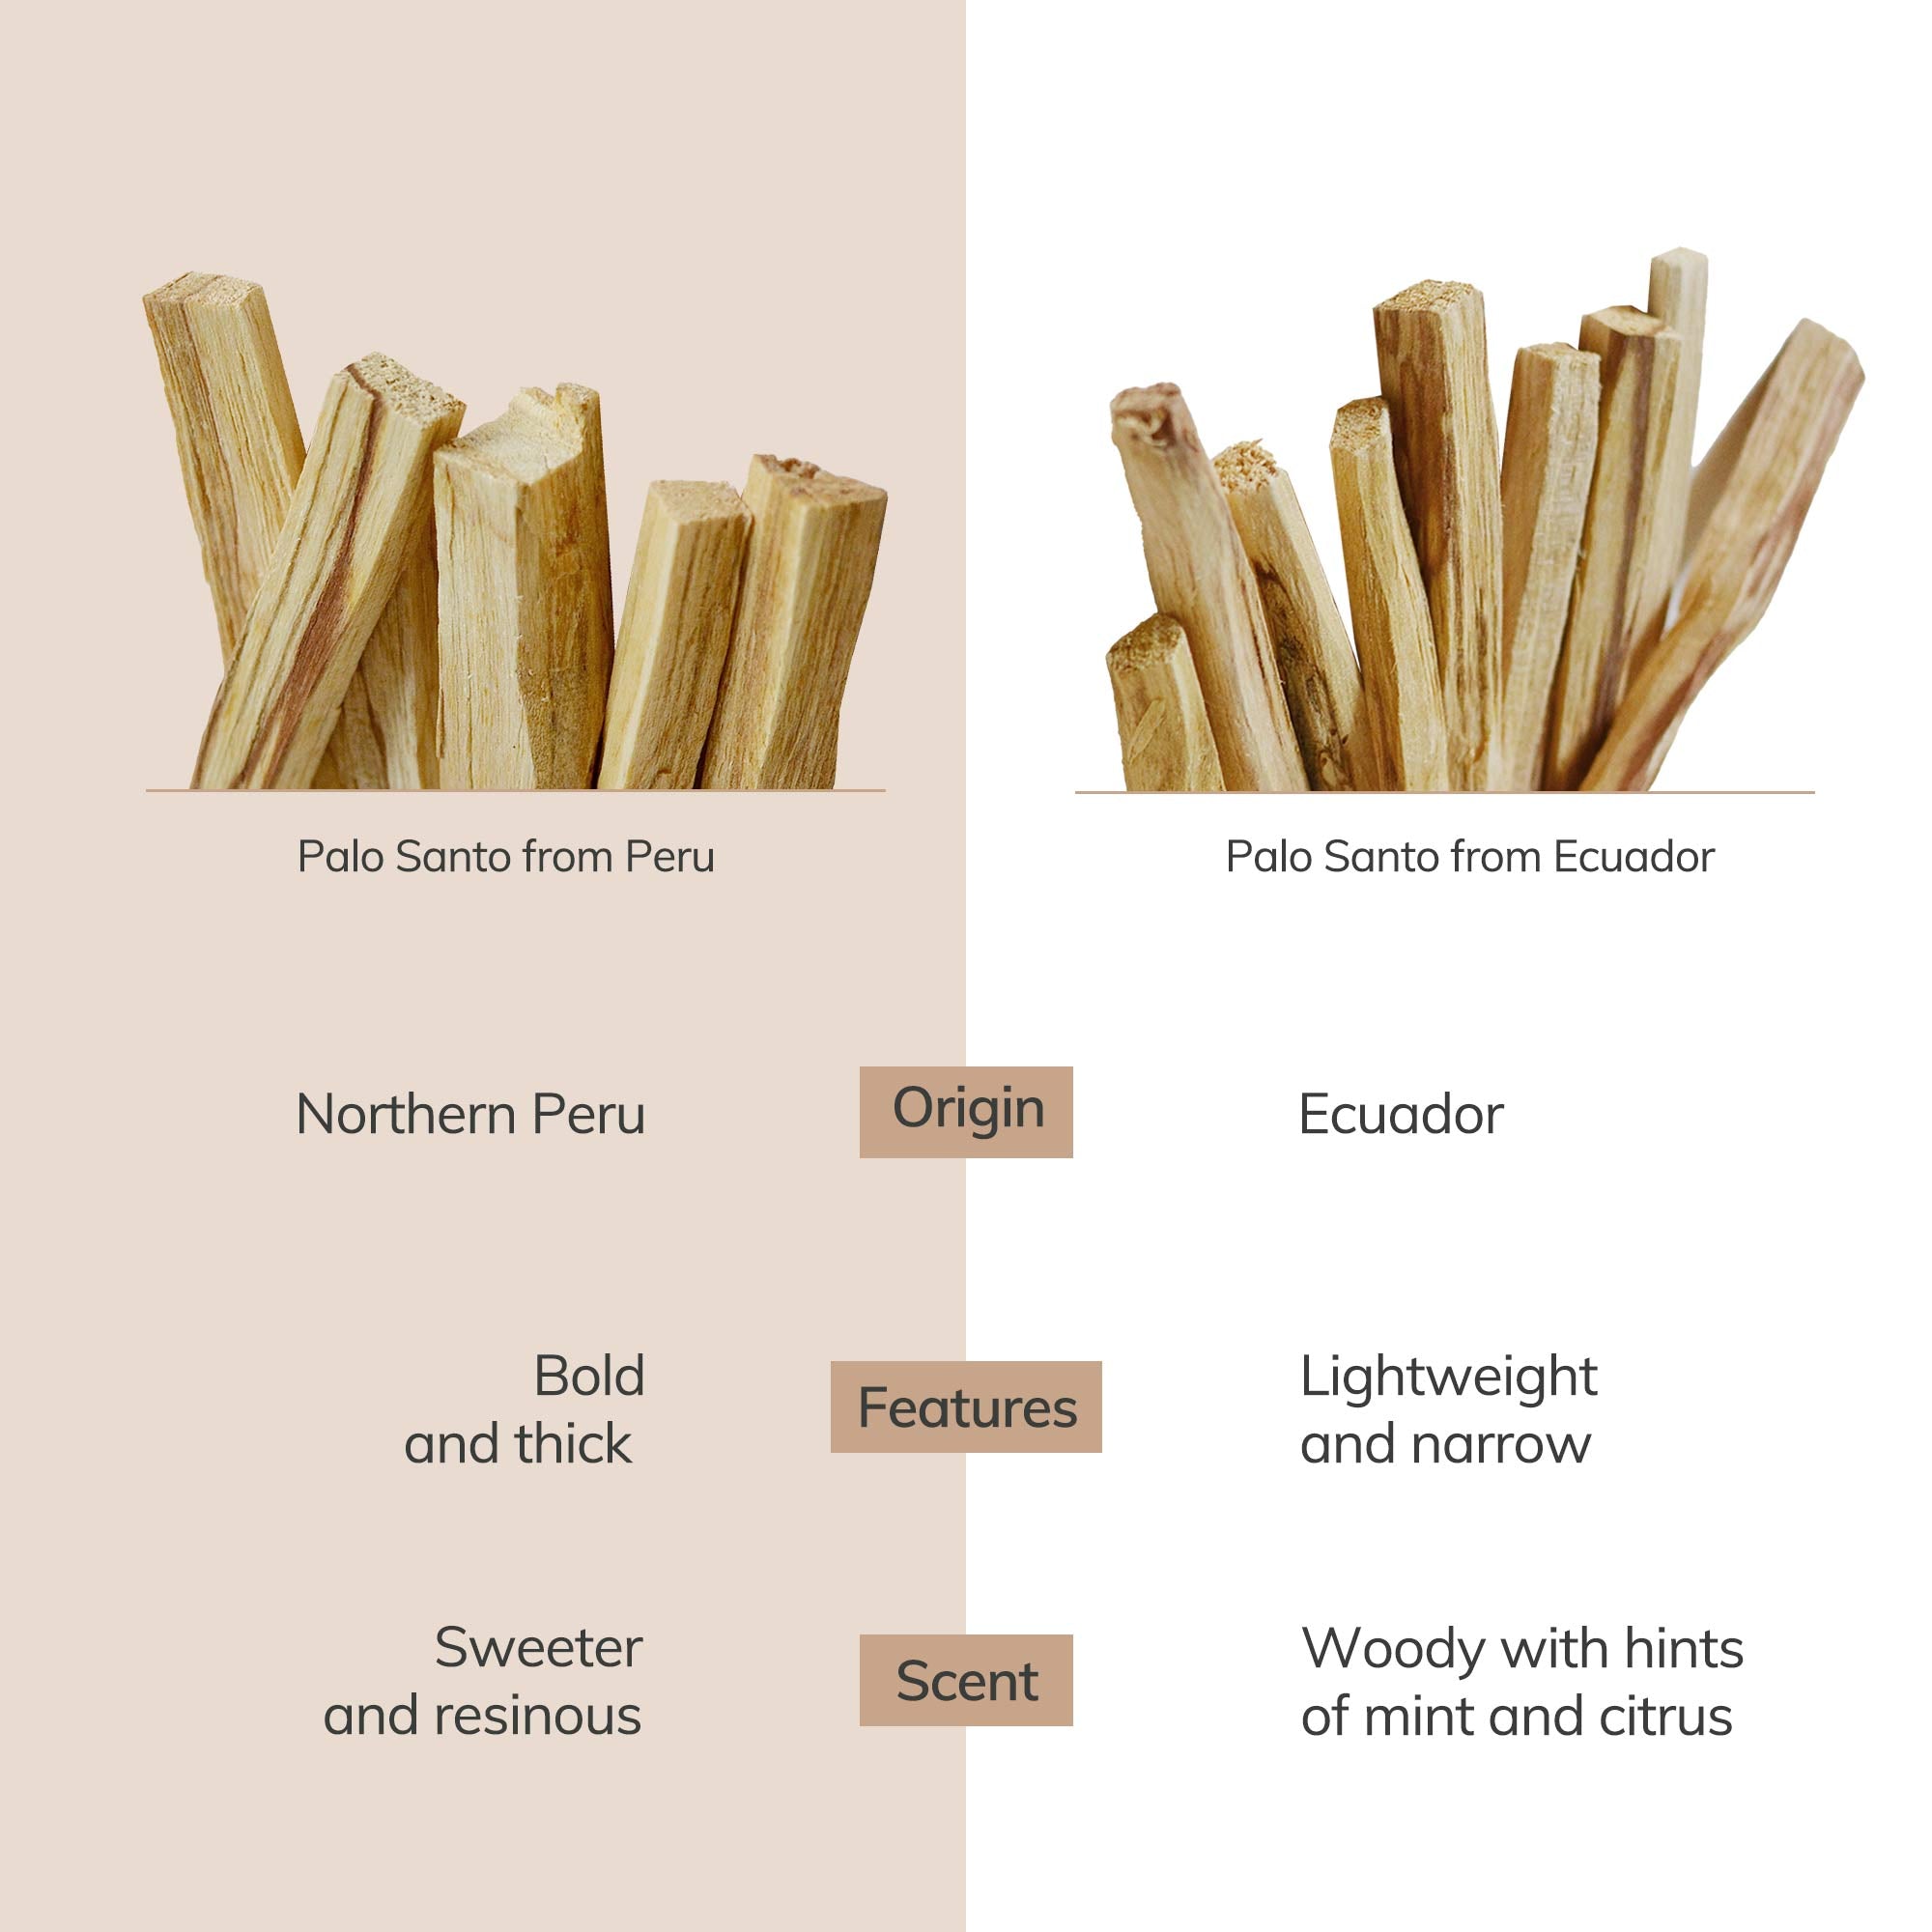 Comparision of palo santo wood sticks between Peru and Ecuador.